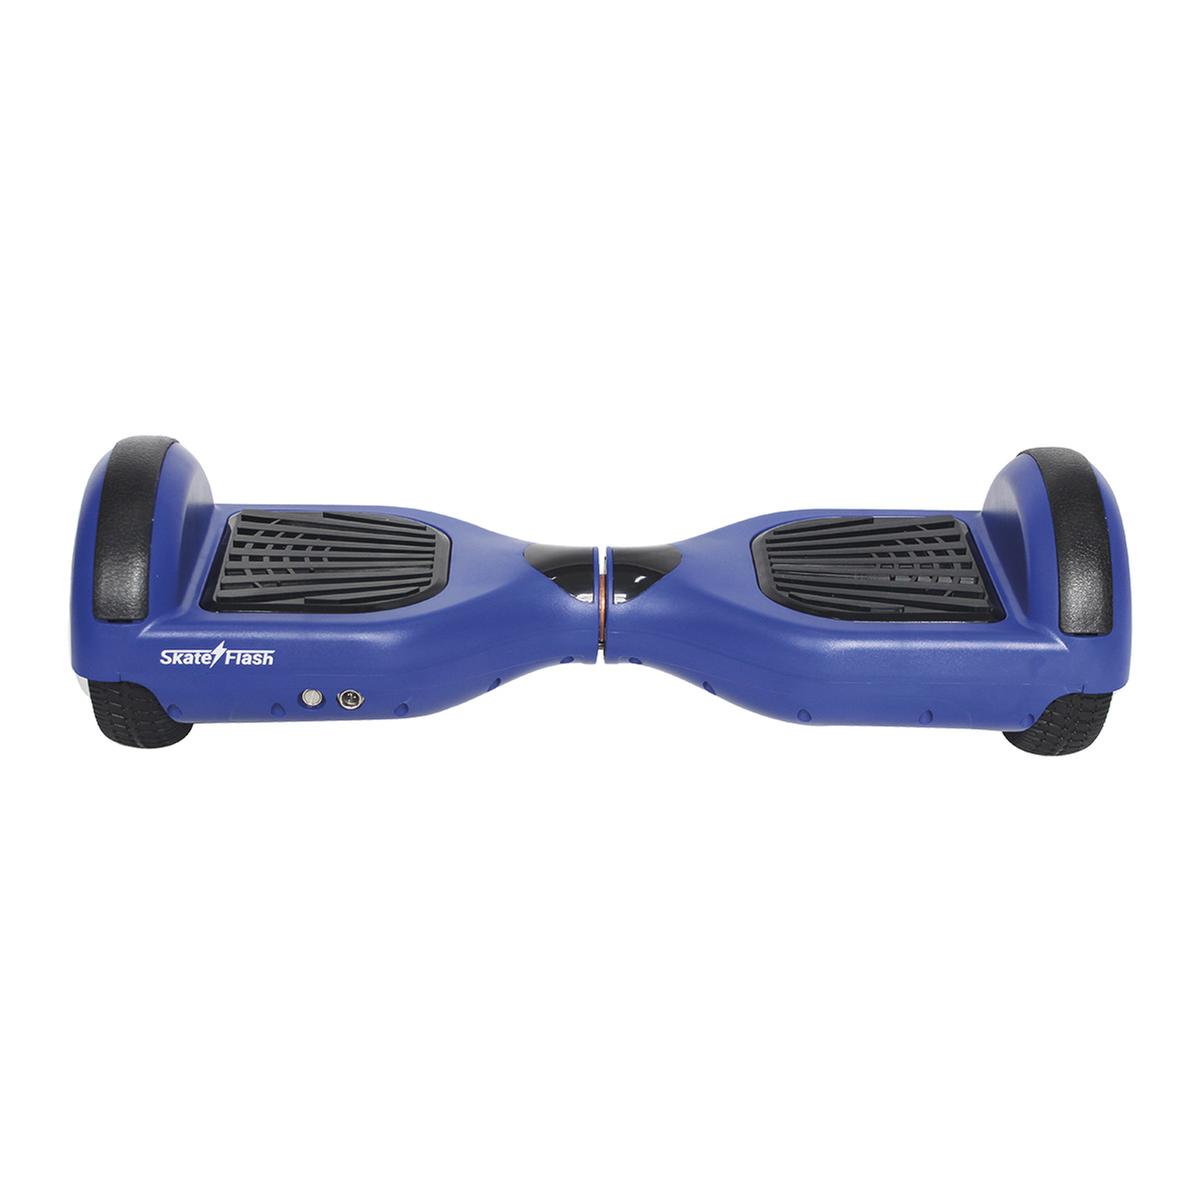 Hoverboard Skateflash K6 Azul | MOBILIDADE URBANA | Loja de brinquedos e  videojogos Online Toysrus